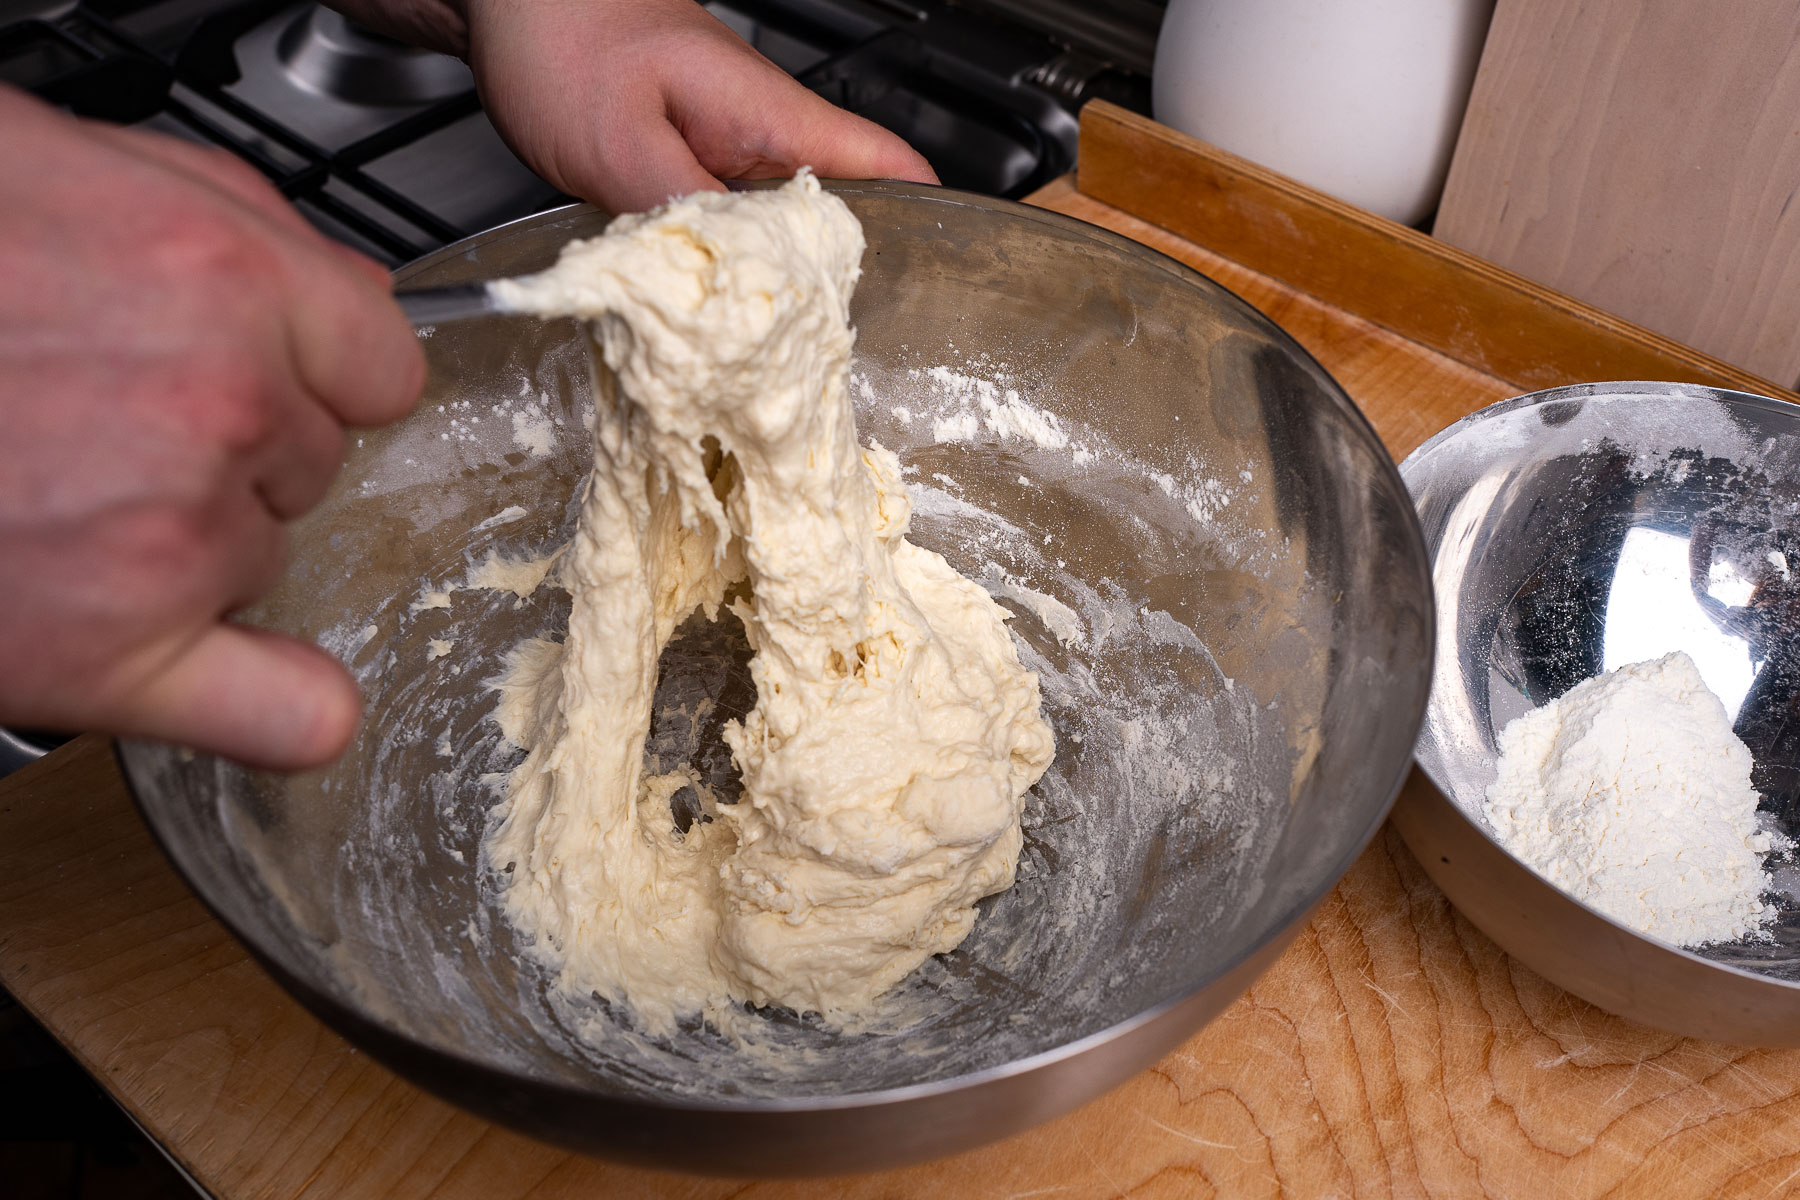 po dodaniu drugiej połowy mąki (część możemy zostawić do podsypania) i wymieszaniu widelcem ciasto wchłonie całą wodę